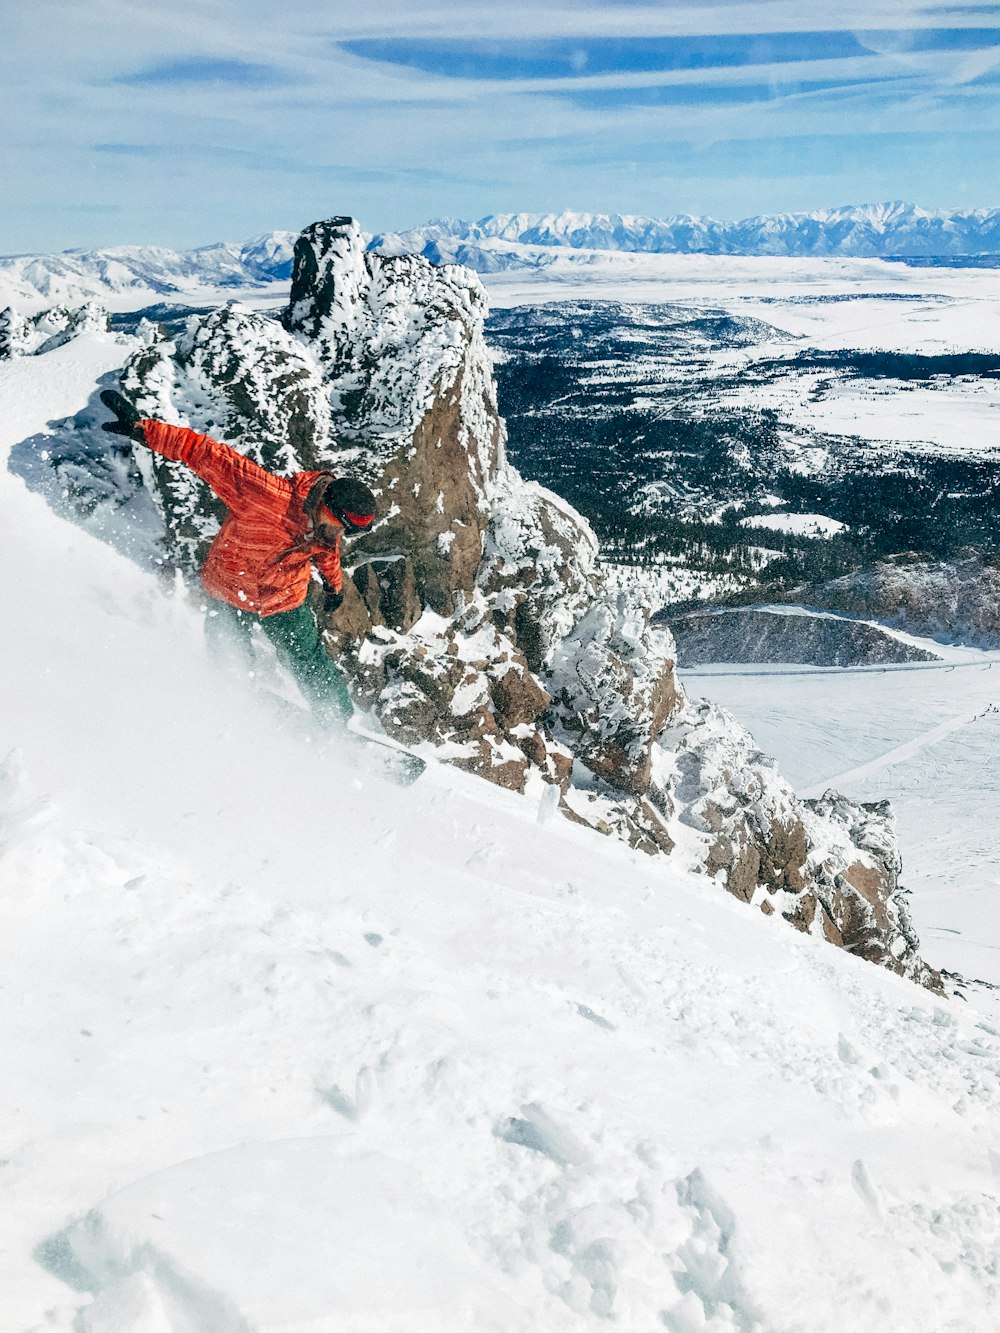 homme snowboard sur une montagne recouverte de glace